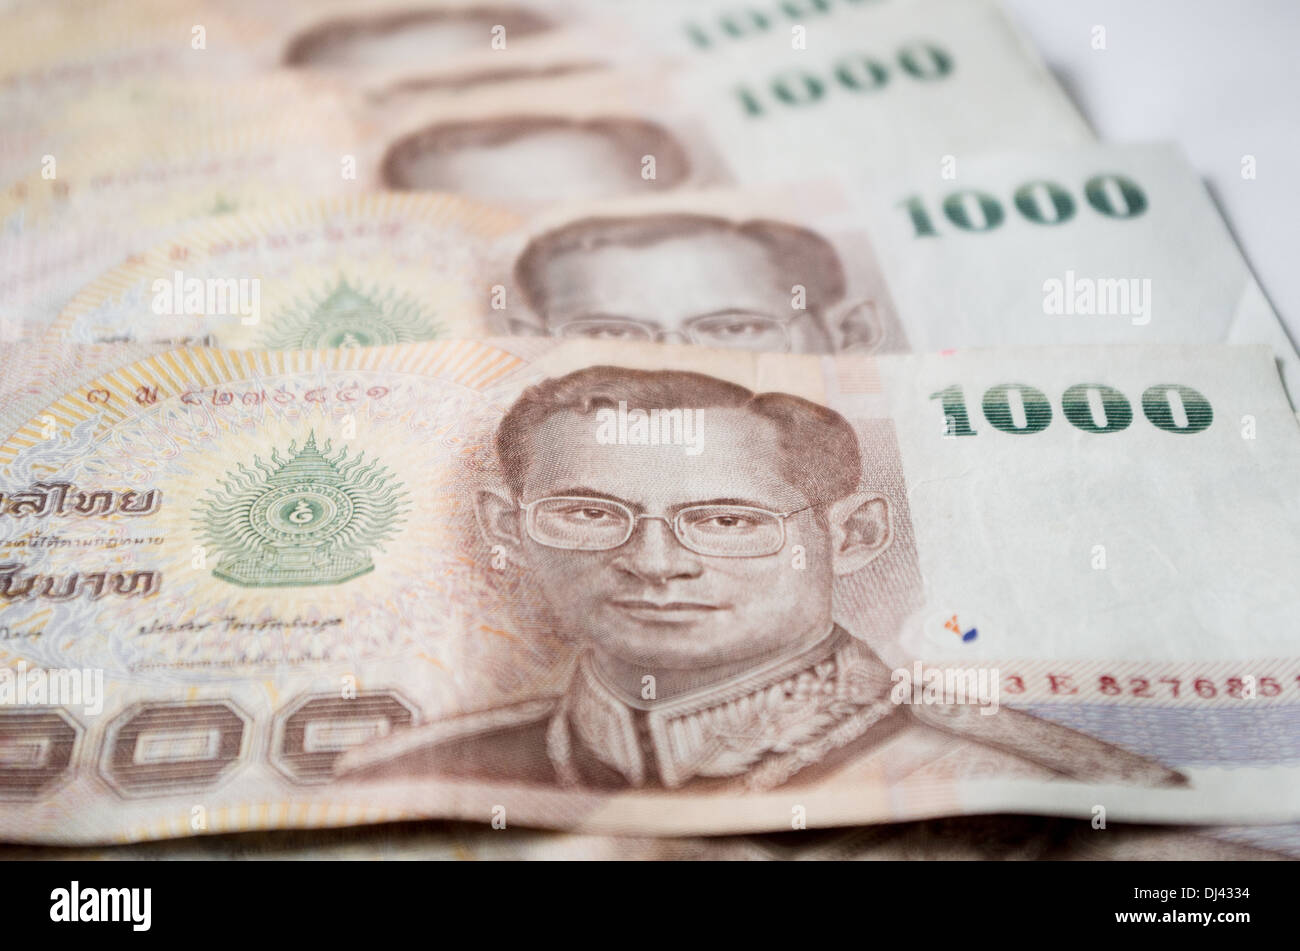 Cerca de Tailandia, moneda baht tailandés con las imágenes del Rey de Tailandia. Denominación de 1000 bahts. Foto de stock